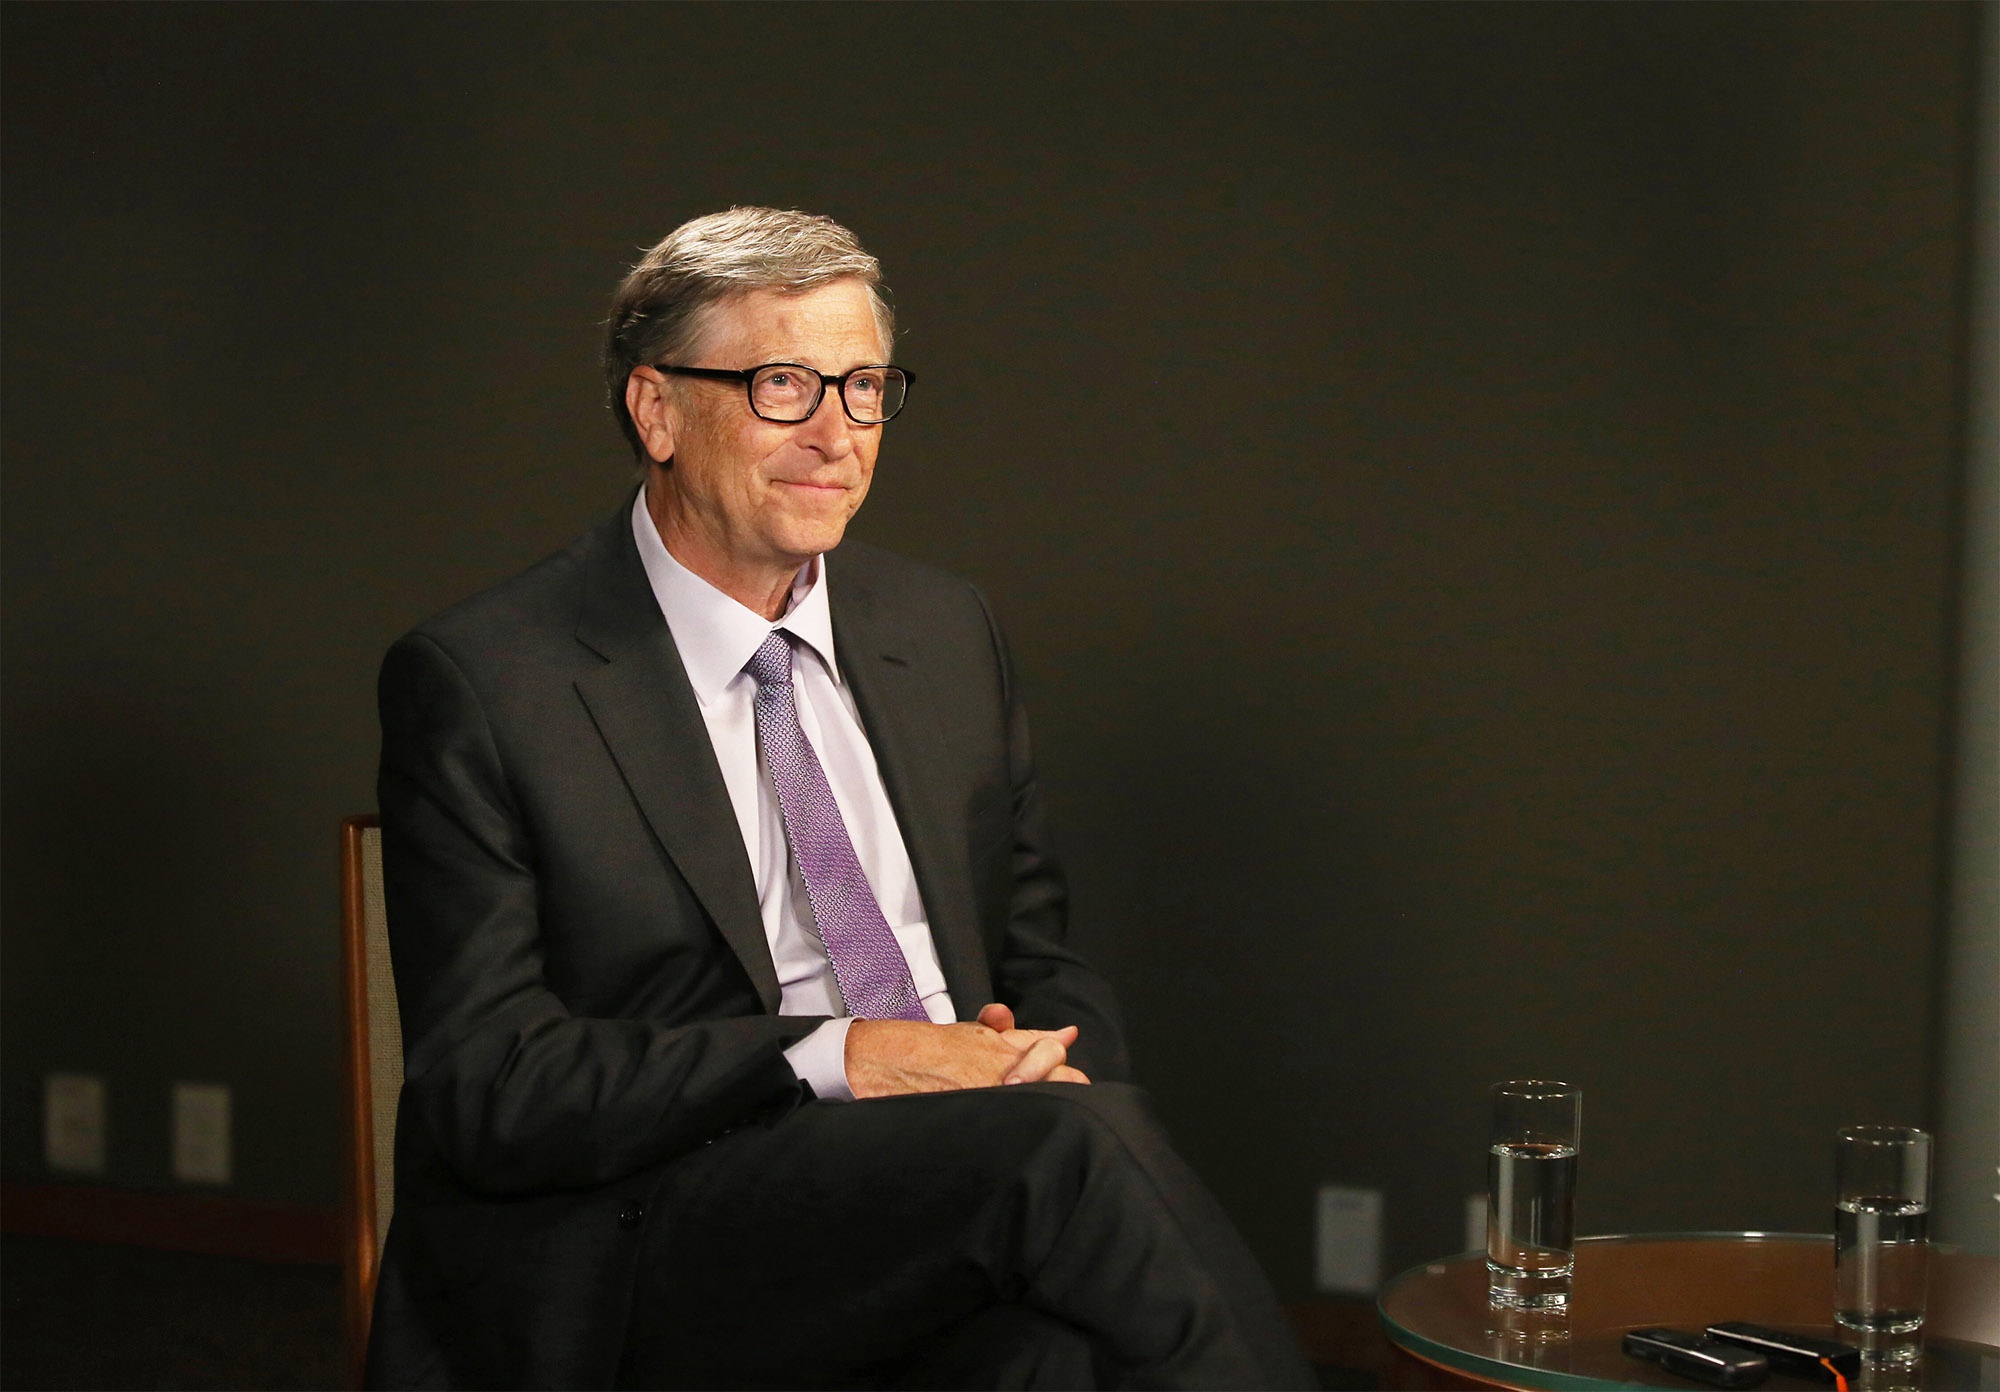 Trong hai tuần, hình ảnh đẹp đẽ của Bill Gates tan vỡ - Ảnh 1.